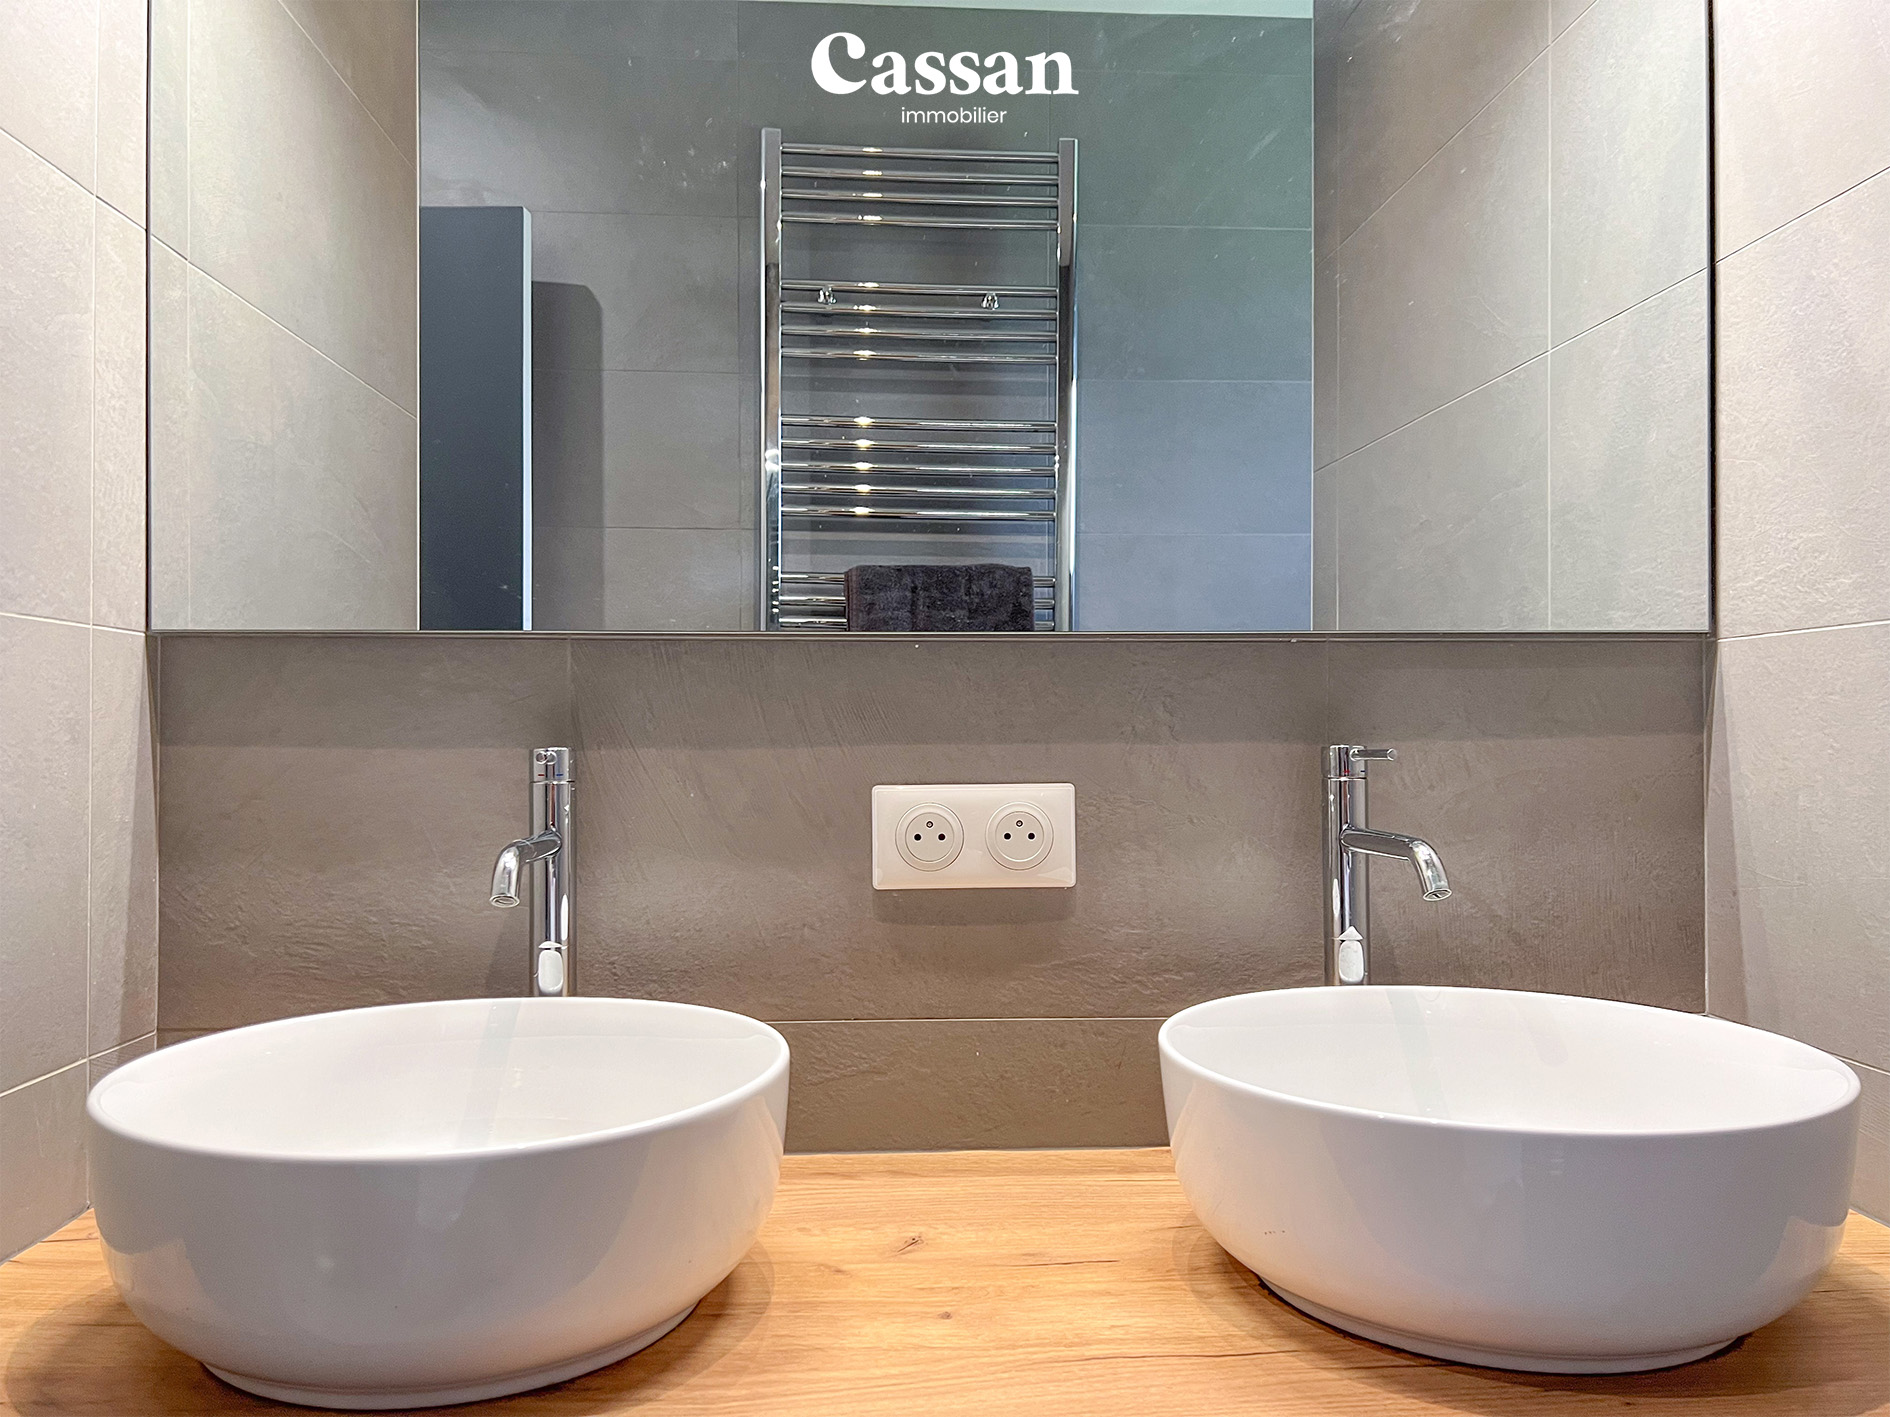 Salle de bain maison à vendre Aurillac Cassan immobilier